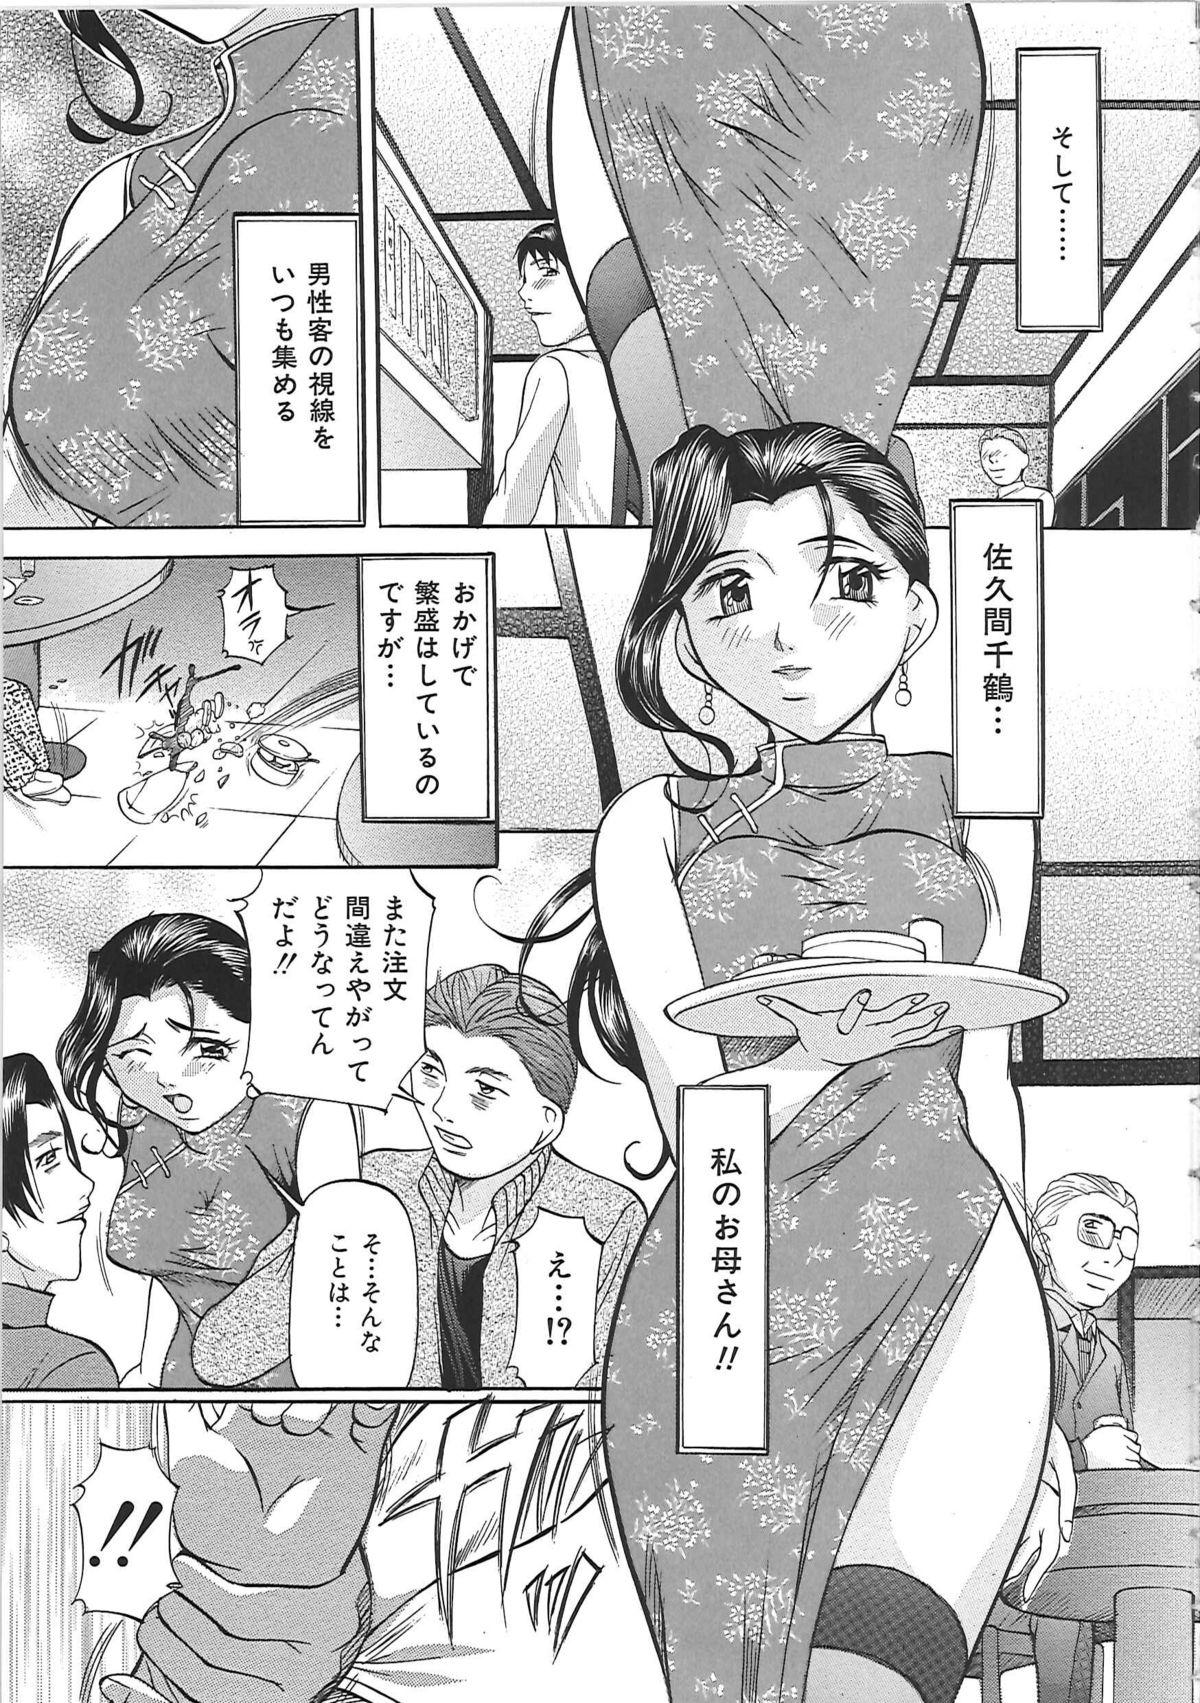 Bj Kyonyuu Korogashi 18 Year Old - Page 8